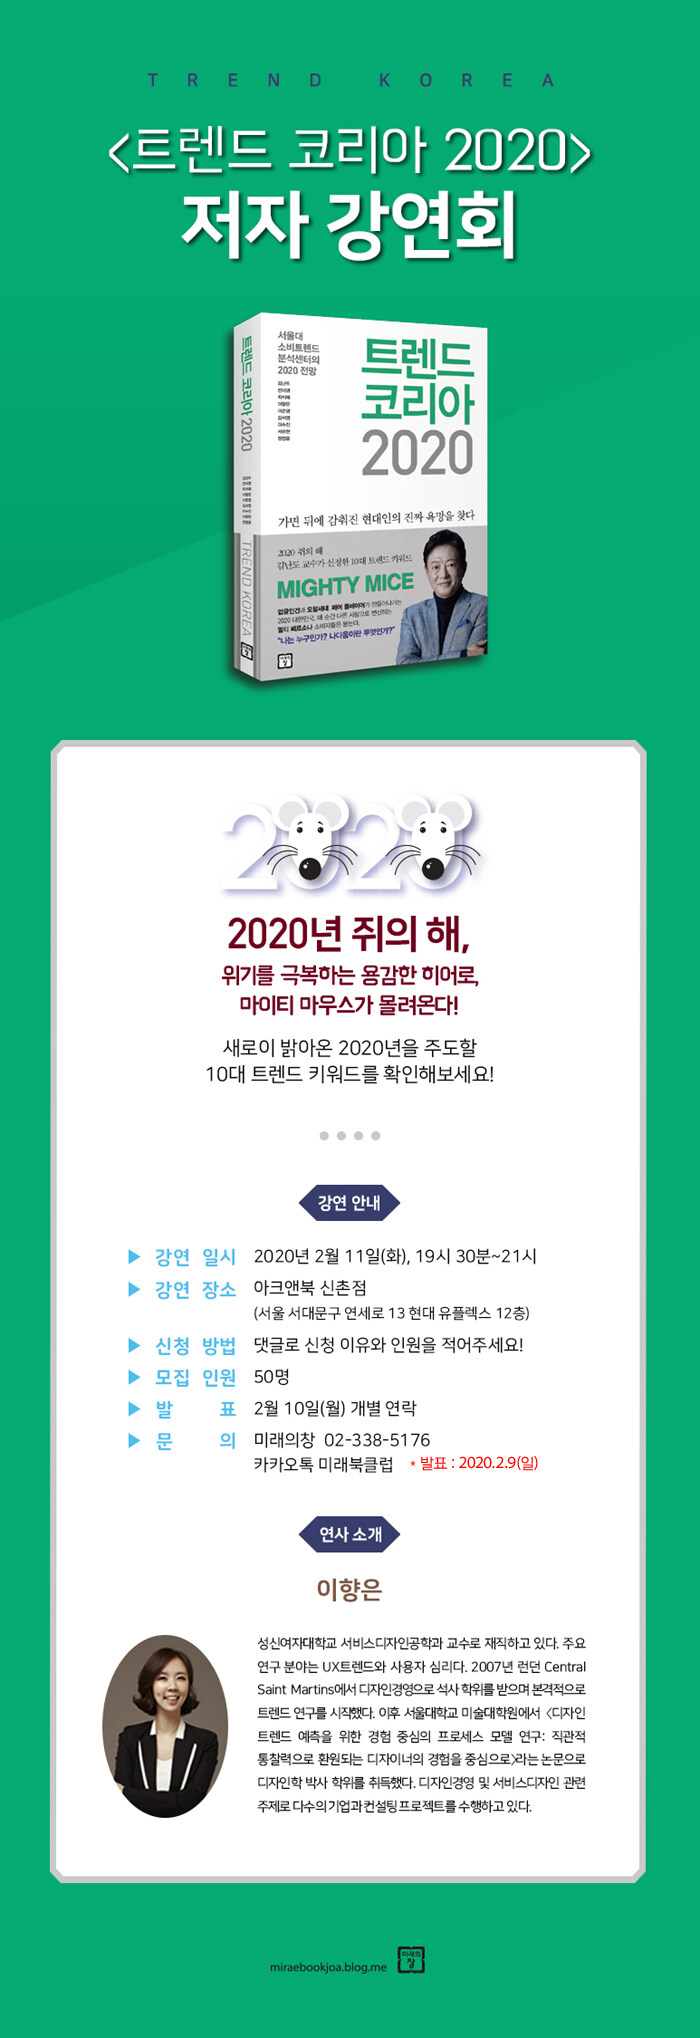 <트렌드 코리아 2020> 저자 강연회